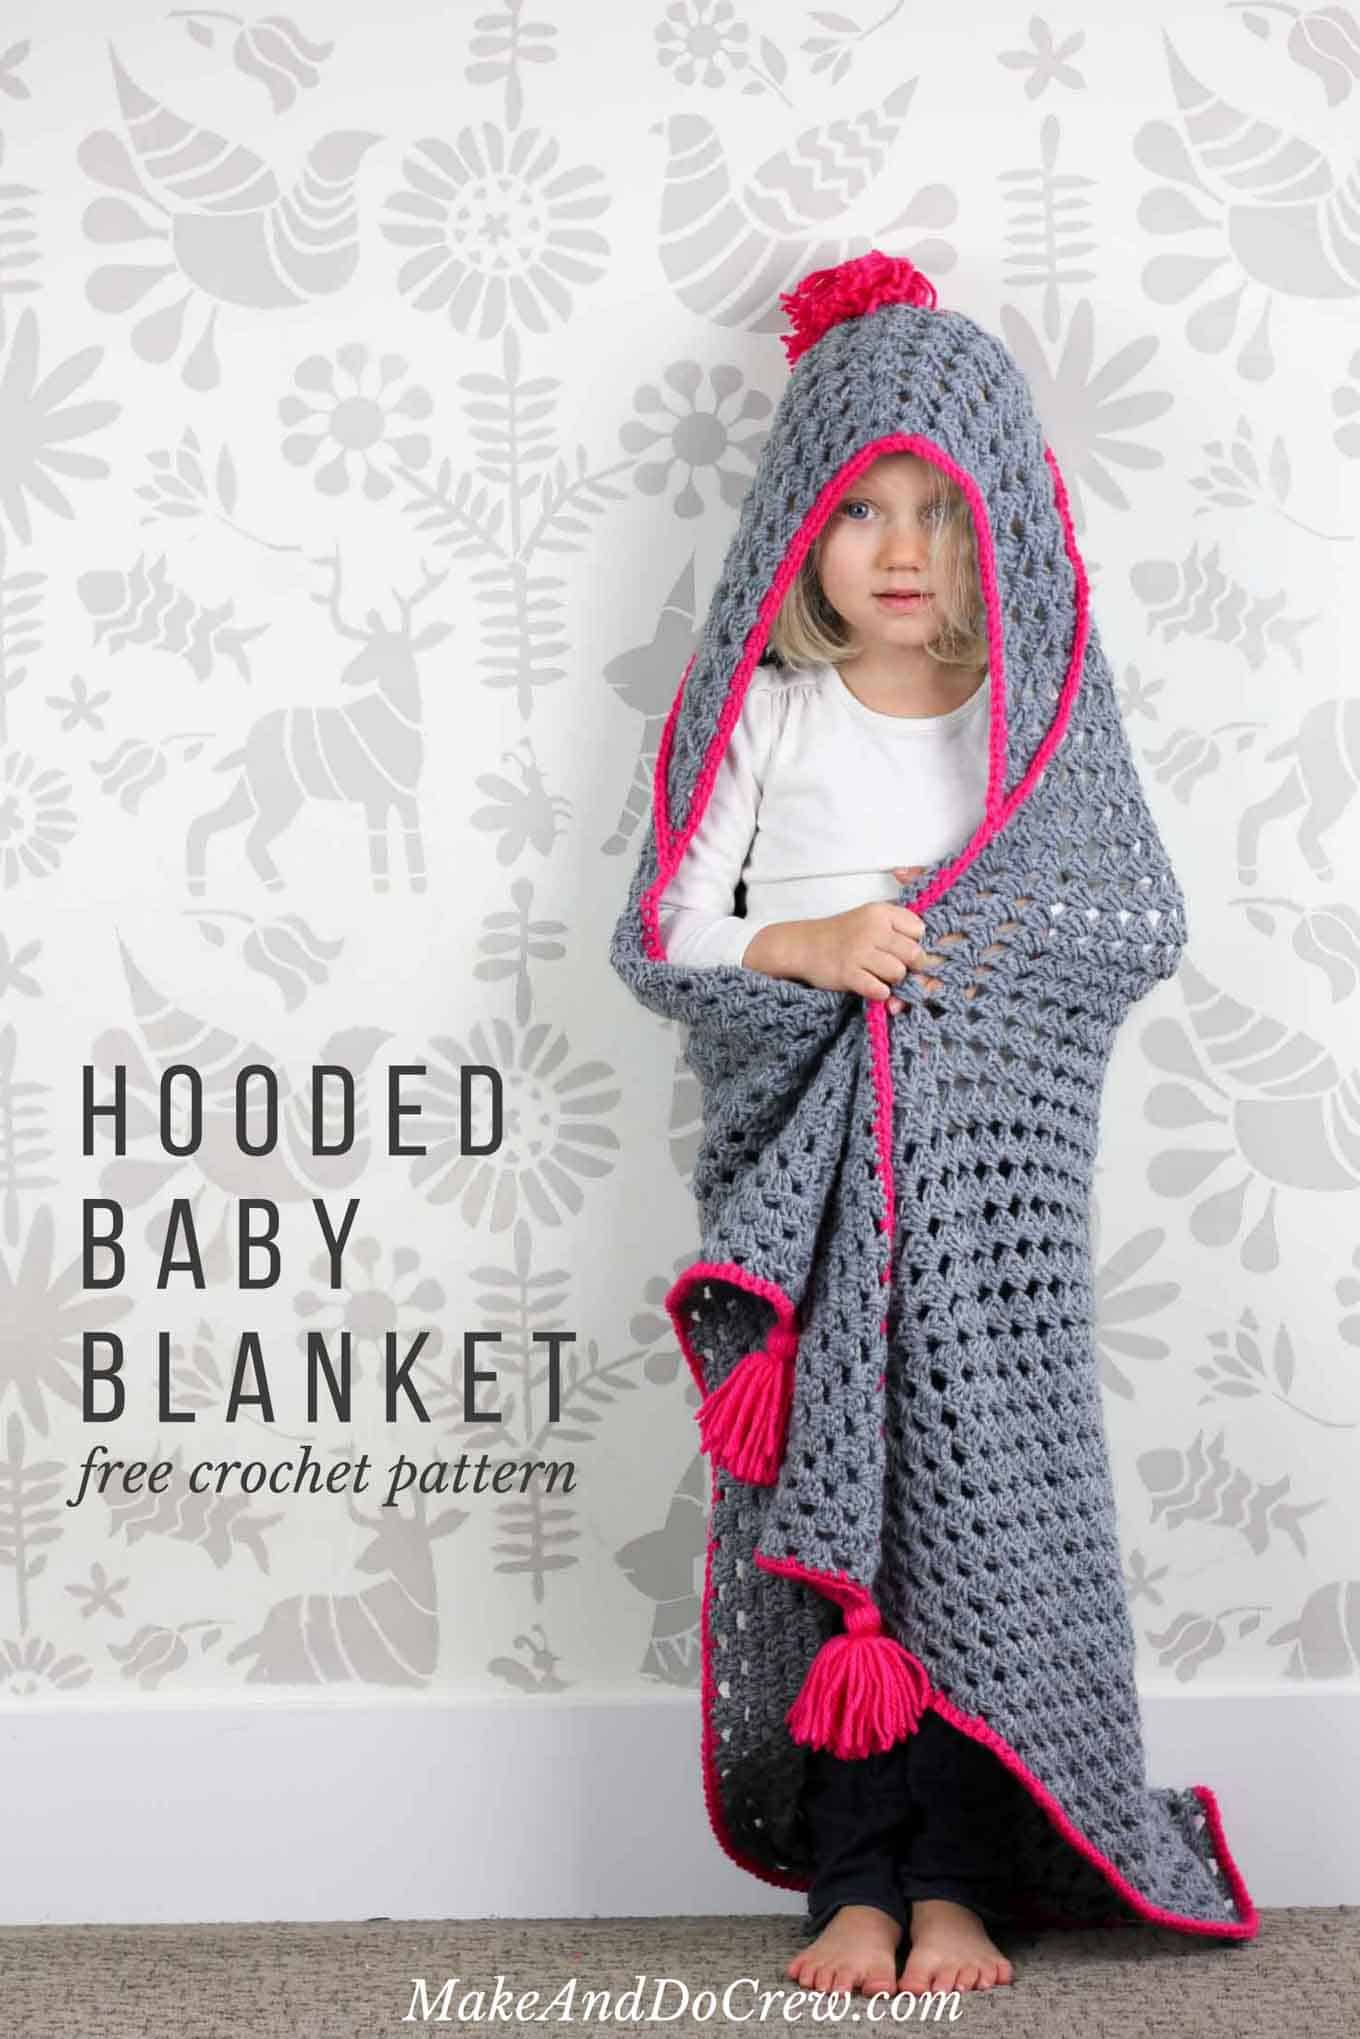 Crochet hooded blanket